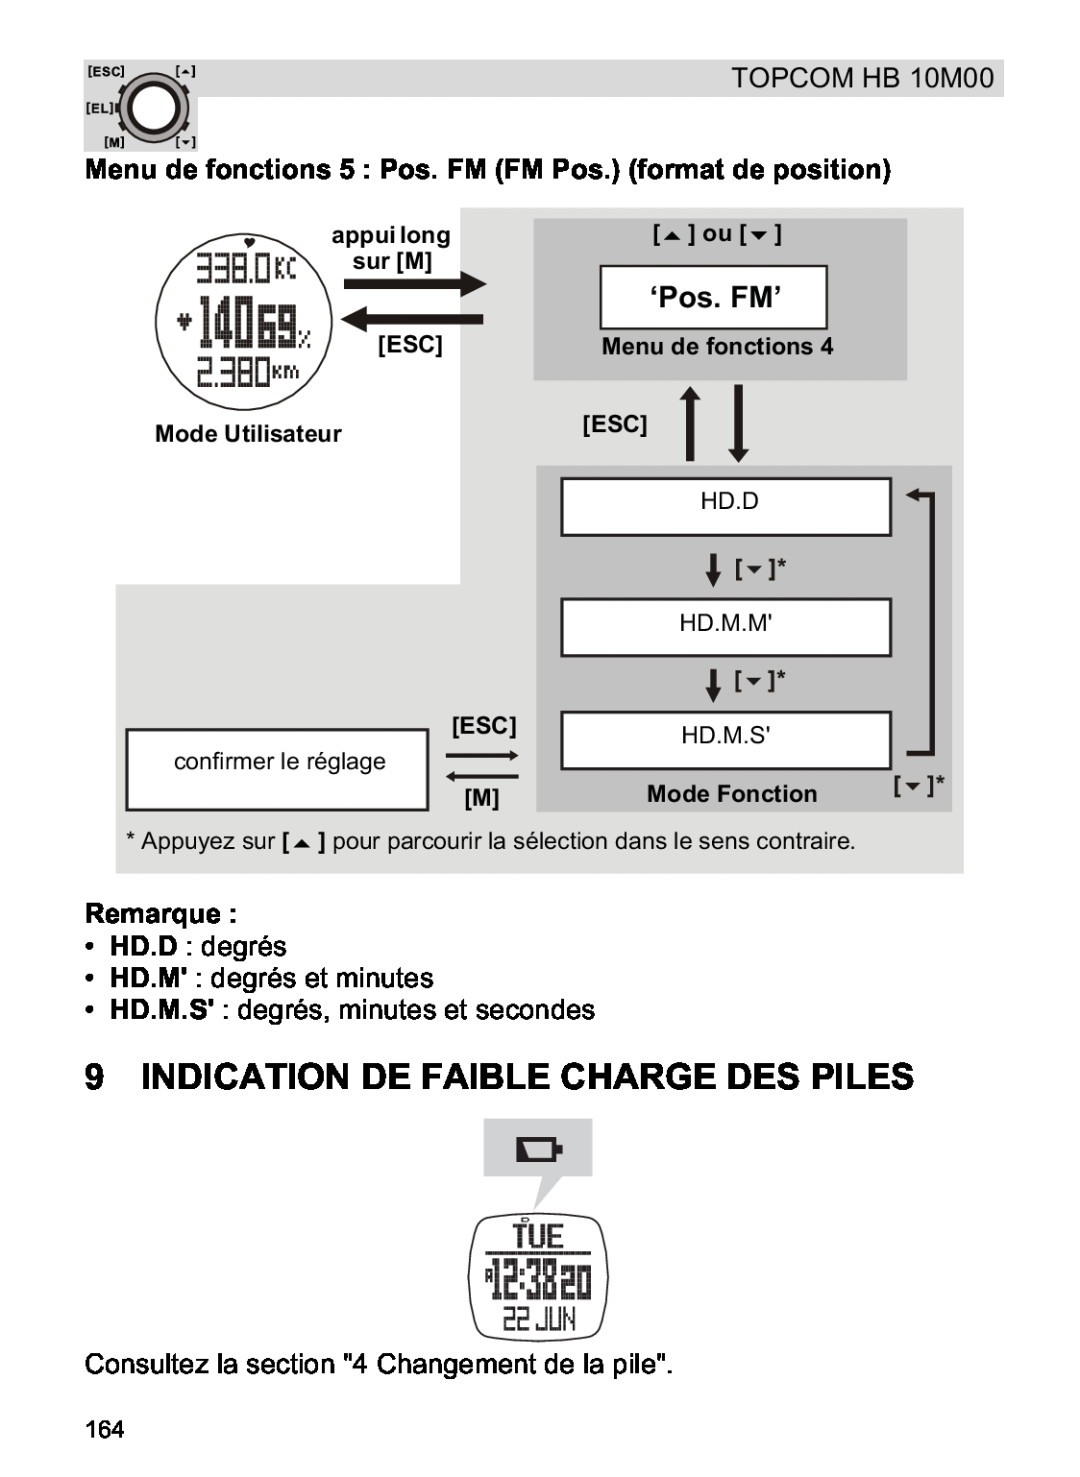 Topcom HB 10M00 Indication De Faible Charge Des Piles, Menu de fonctions 5 Pos. FM FM Pos. format de position, ‘Pos. FM’ 